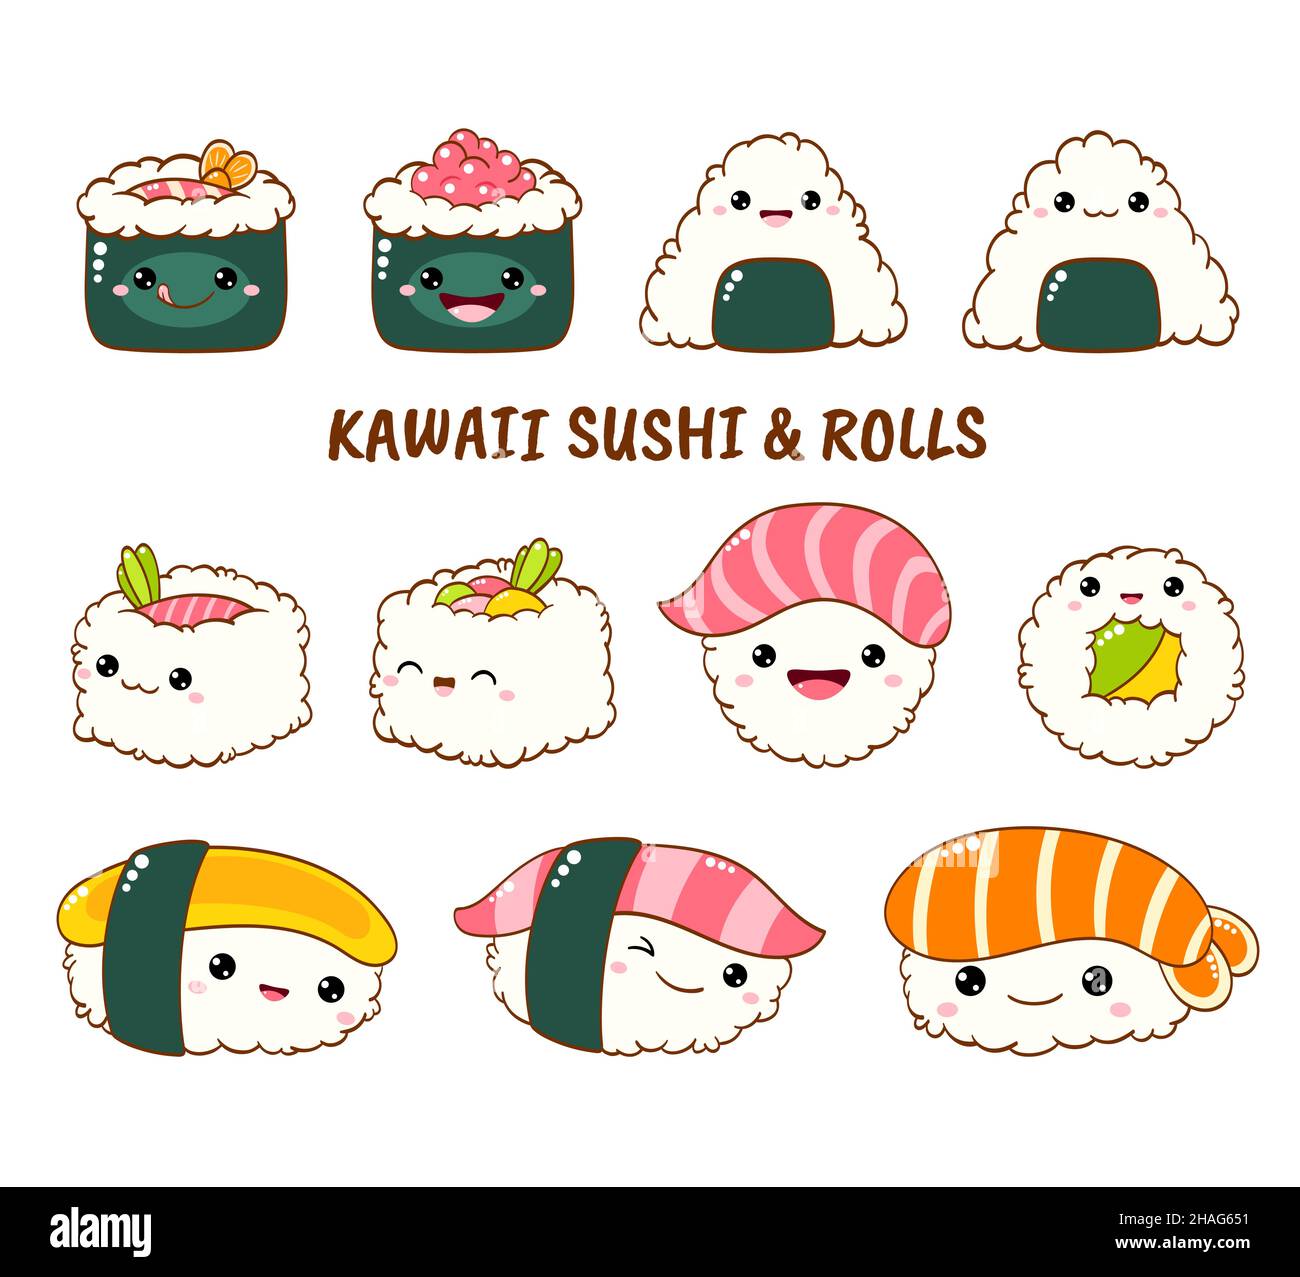 Ensemble de rouleaux de sushi et mignon des icônes dans le style kawaii avec sourire et joues roses. La cuisine traditionnelle japonaise. Temaki, baguettes, nigiri, Illustration de Vecteur